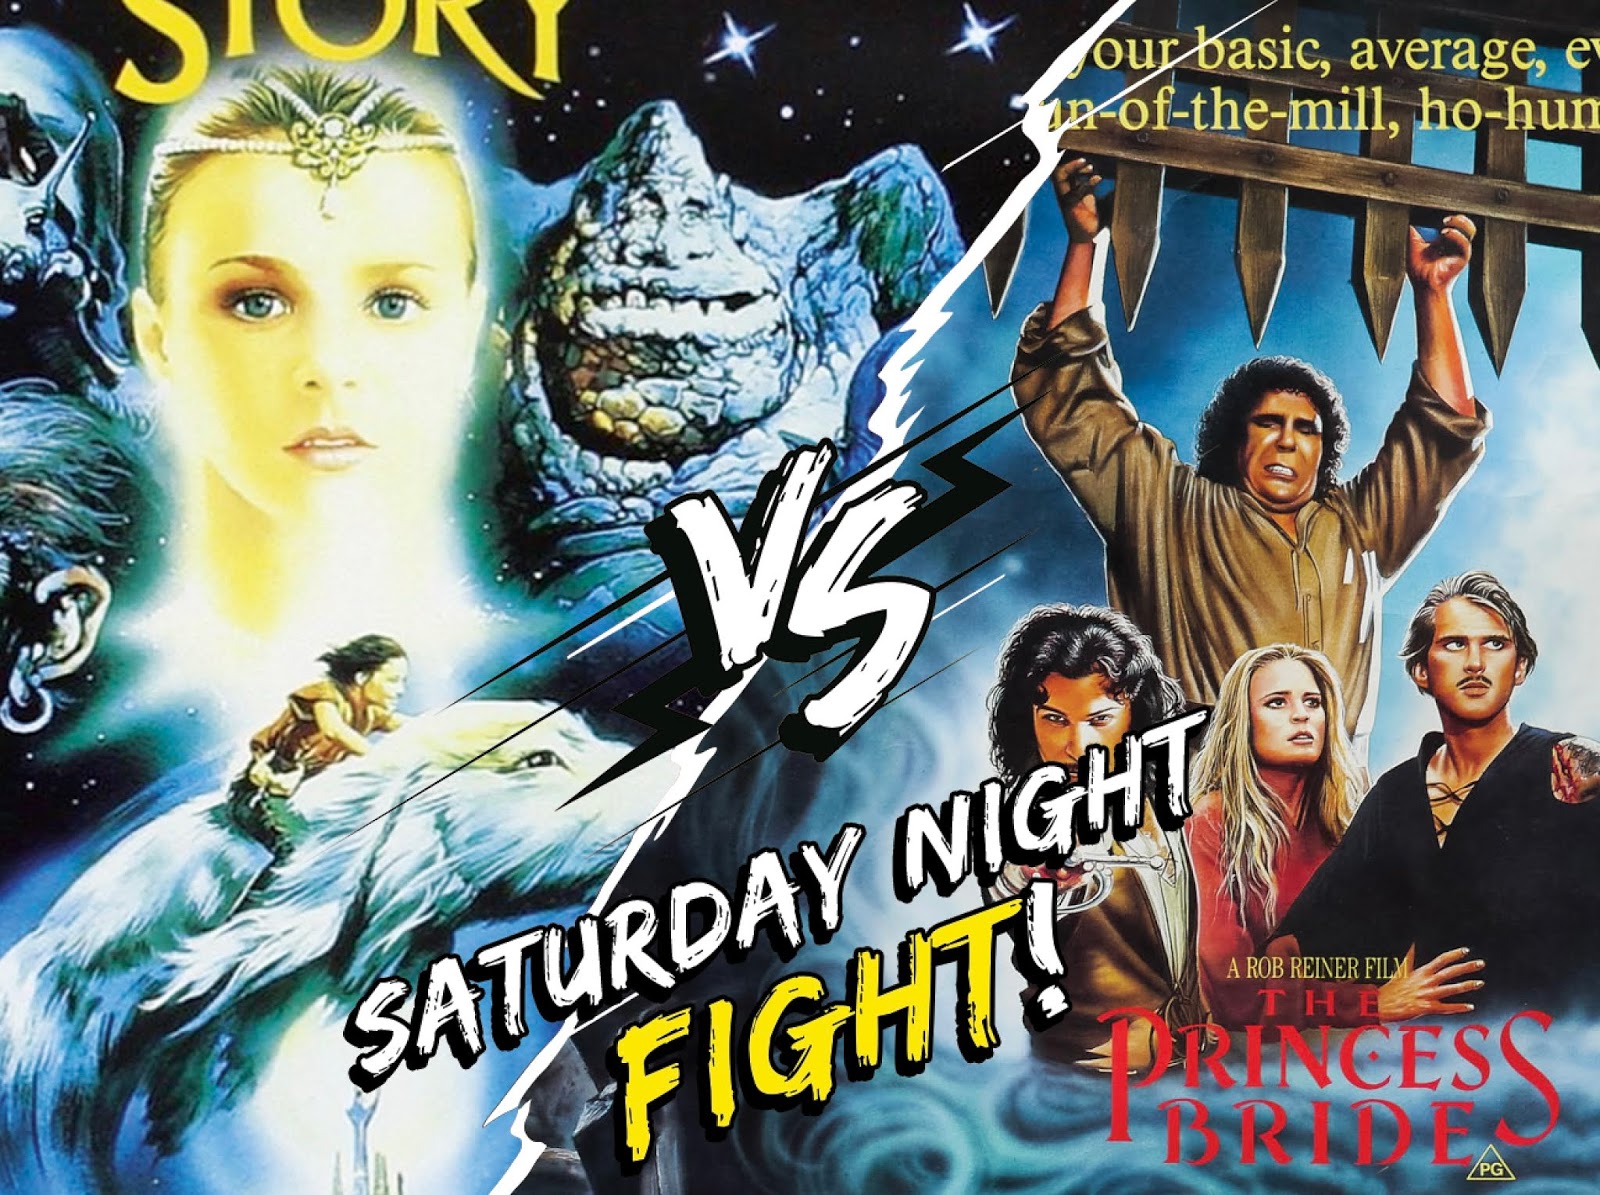 La Storia Infinita o la Storia Fantastica? (Saturday Night Fight)